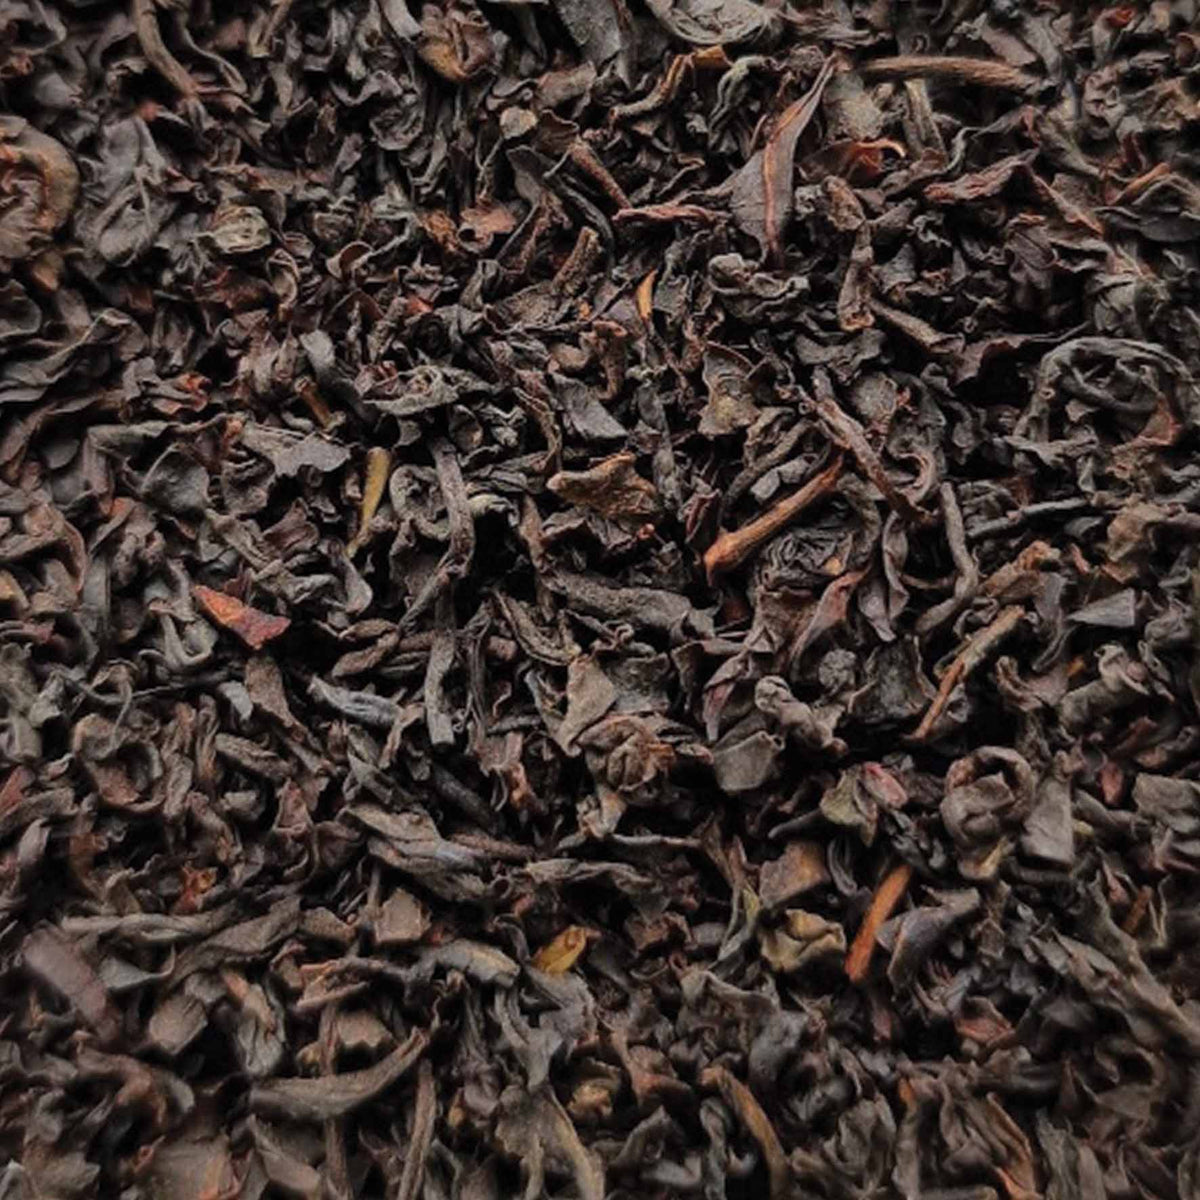 English Breakfast Loose Leaf Tea - tea leaves